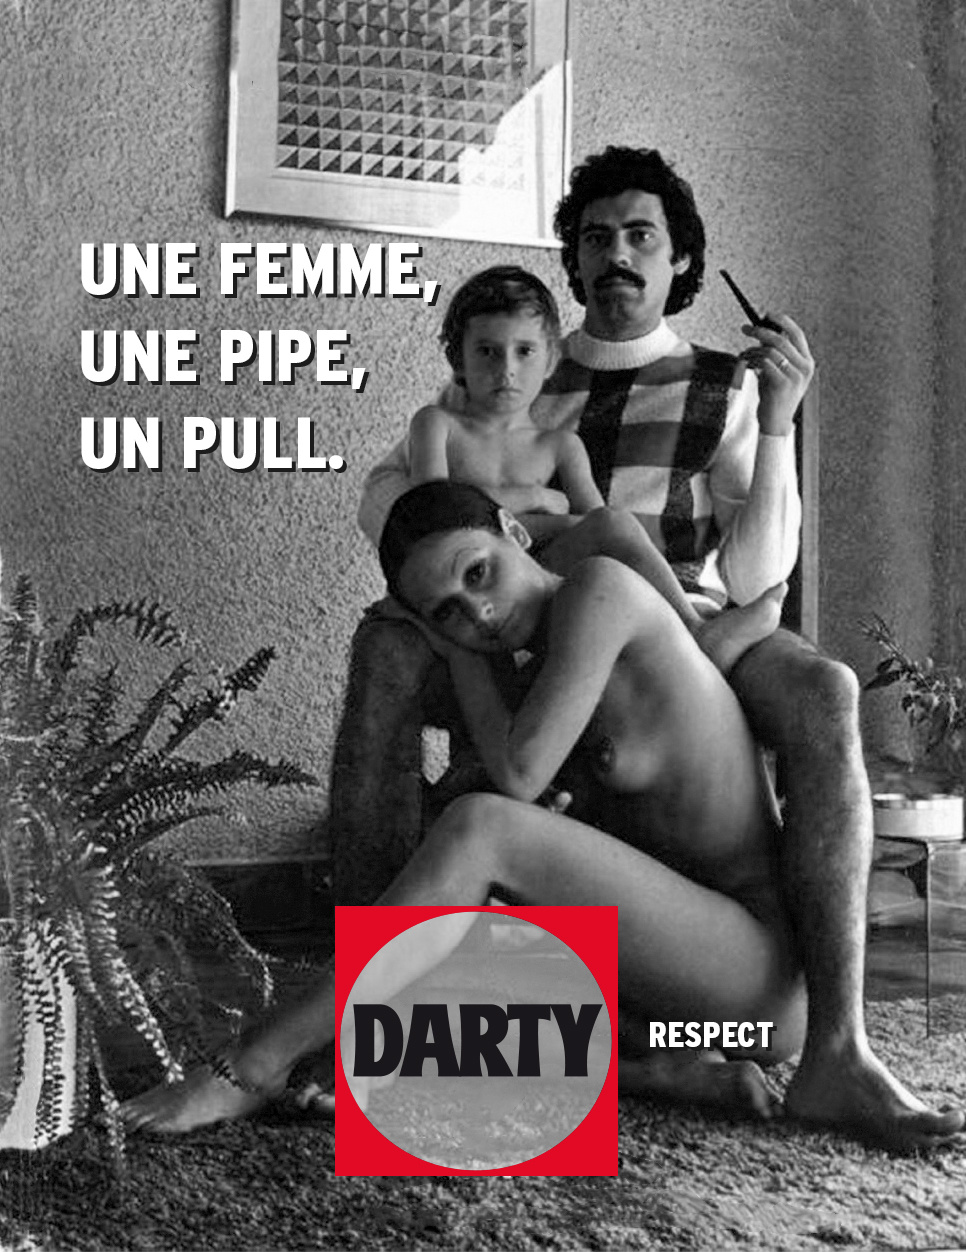 darty_detournement_pub_affiche_sexiste